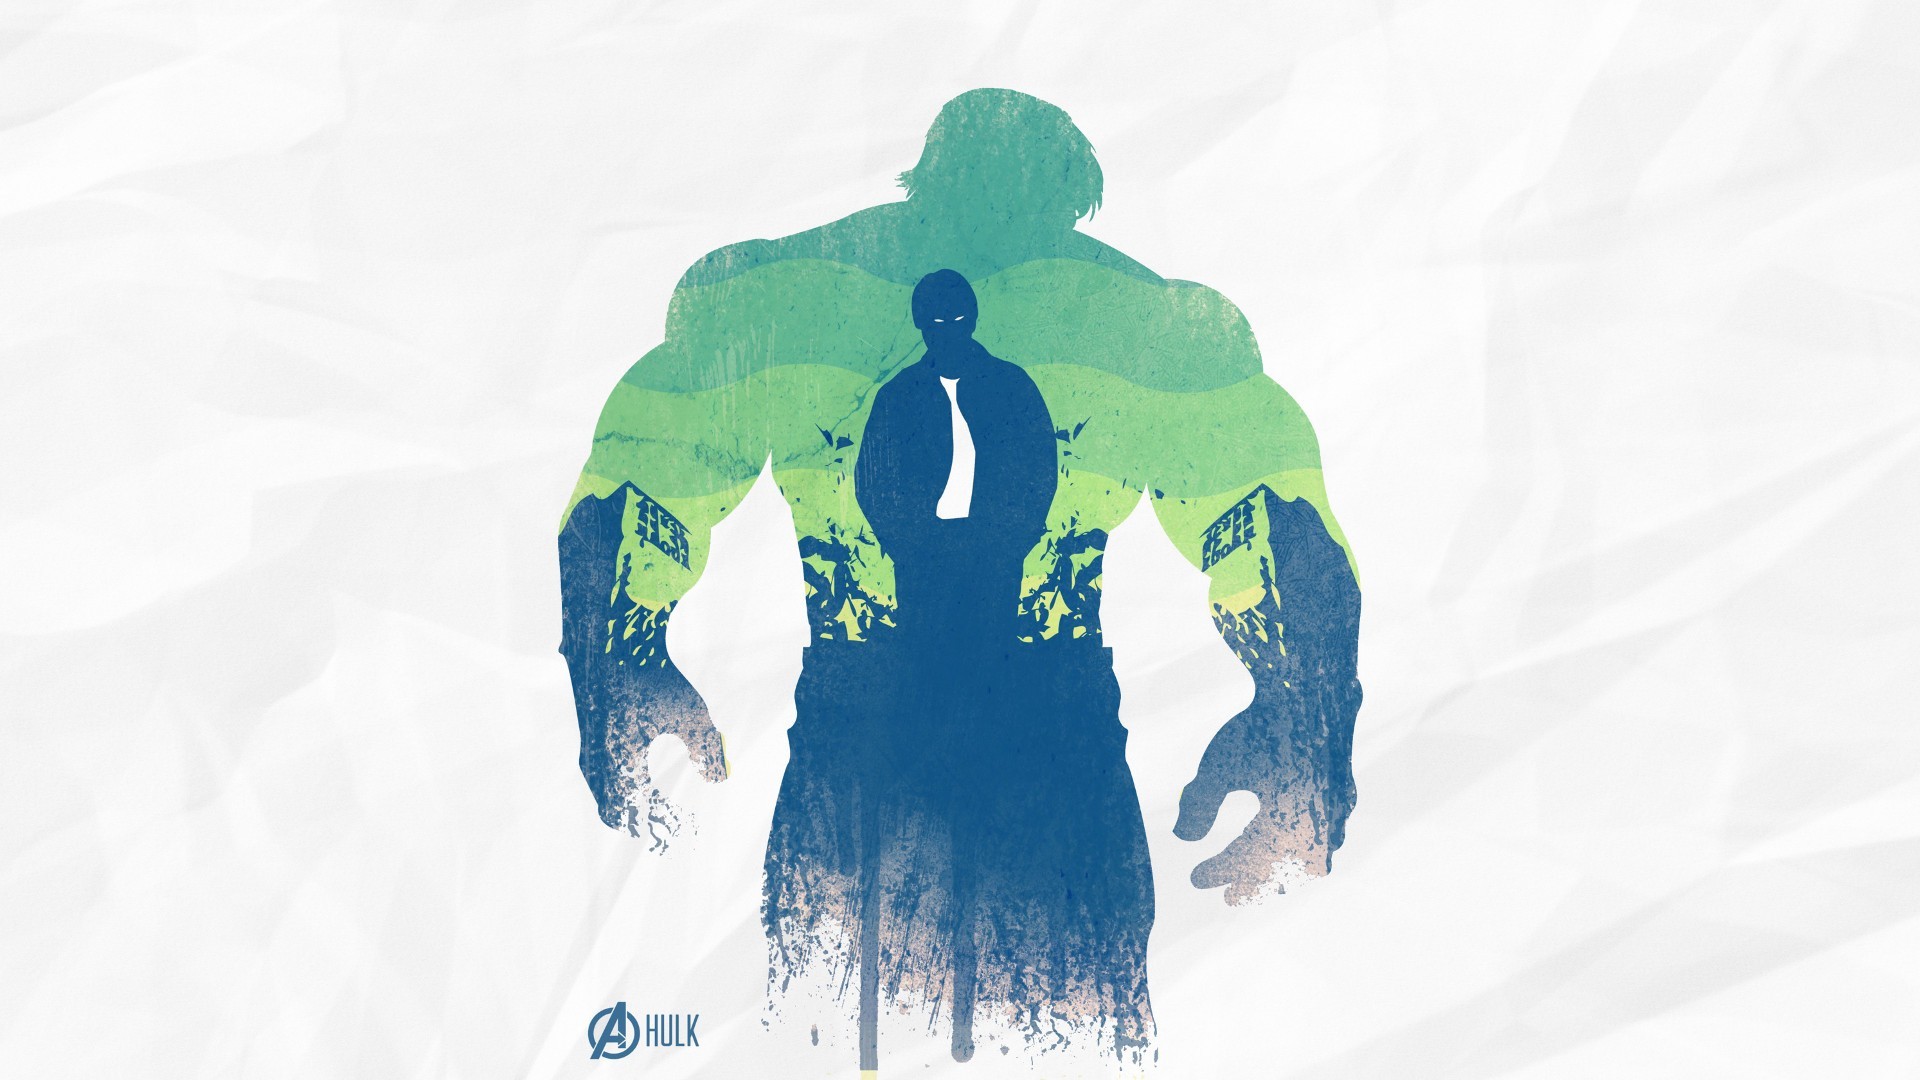 Hulk, Tie, The Avengers Wallpaper